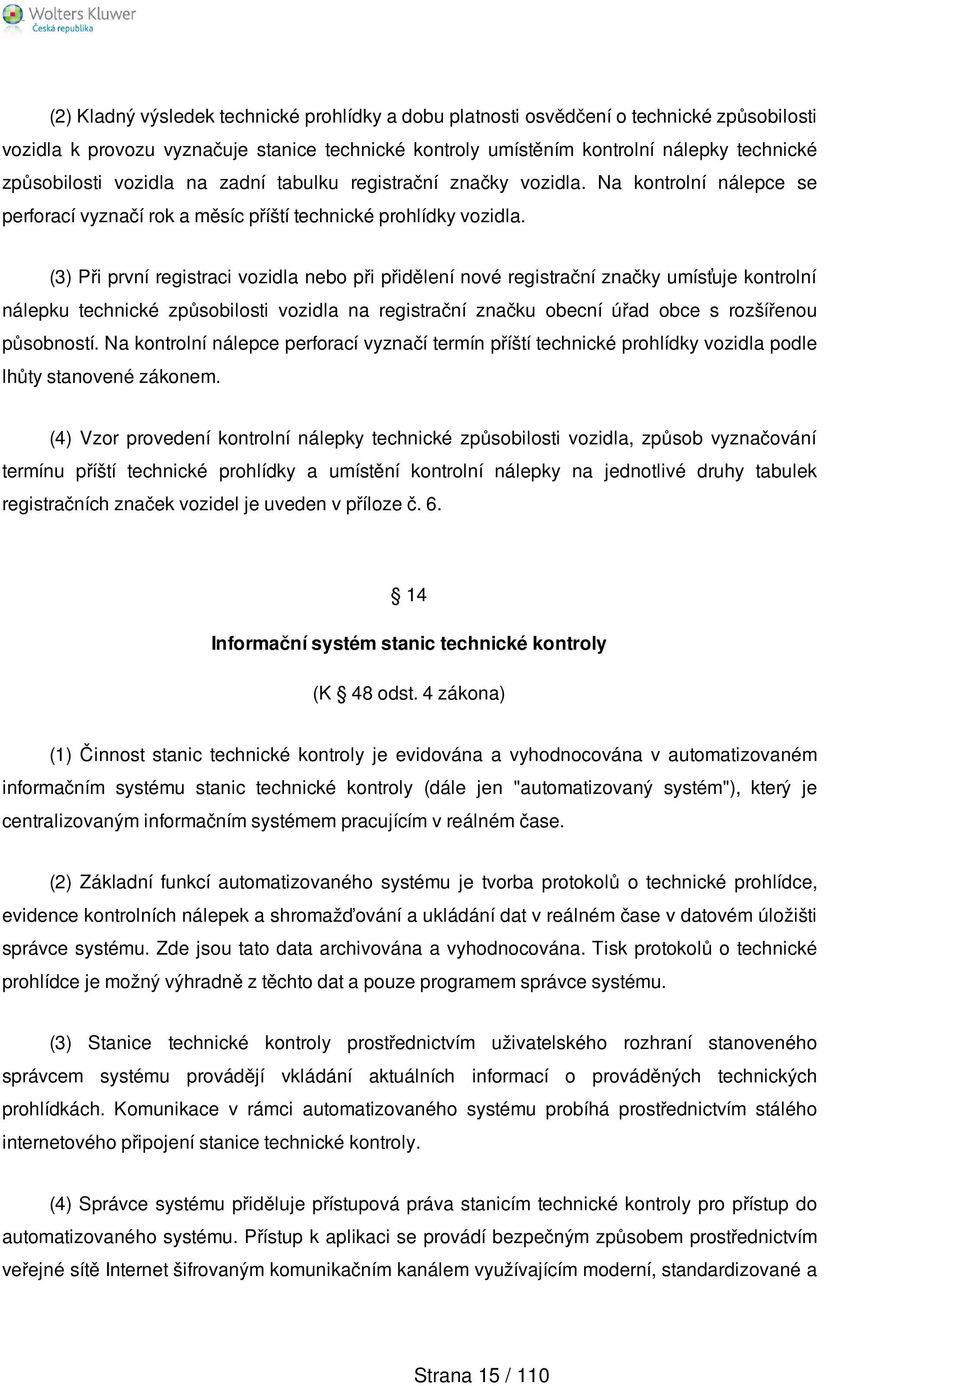 302/2001 Sb. VYHLÁŠKA. Ministerstva dopravy a spojů - PDF Stažení zdarma